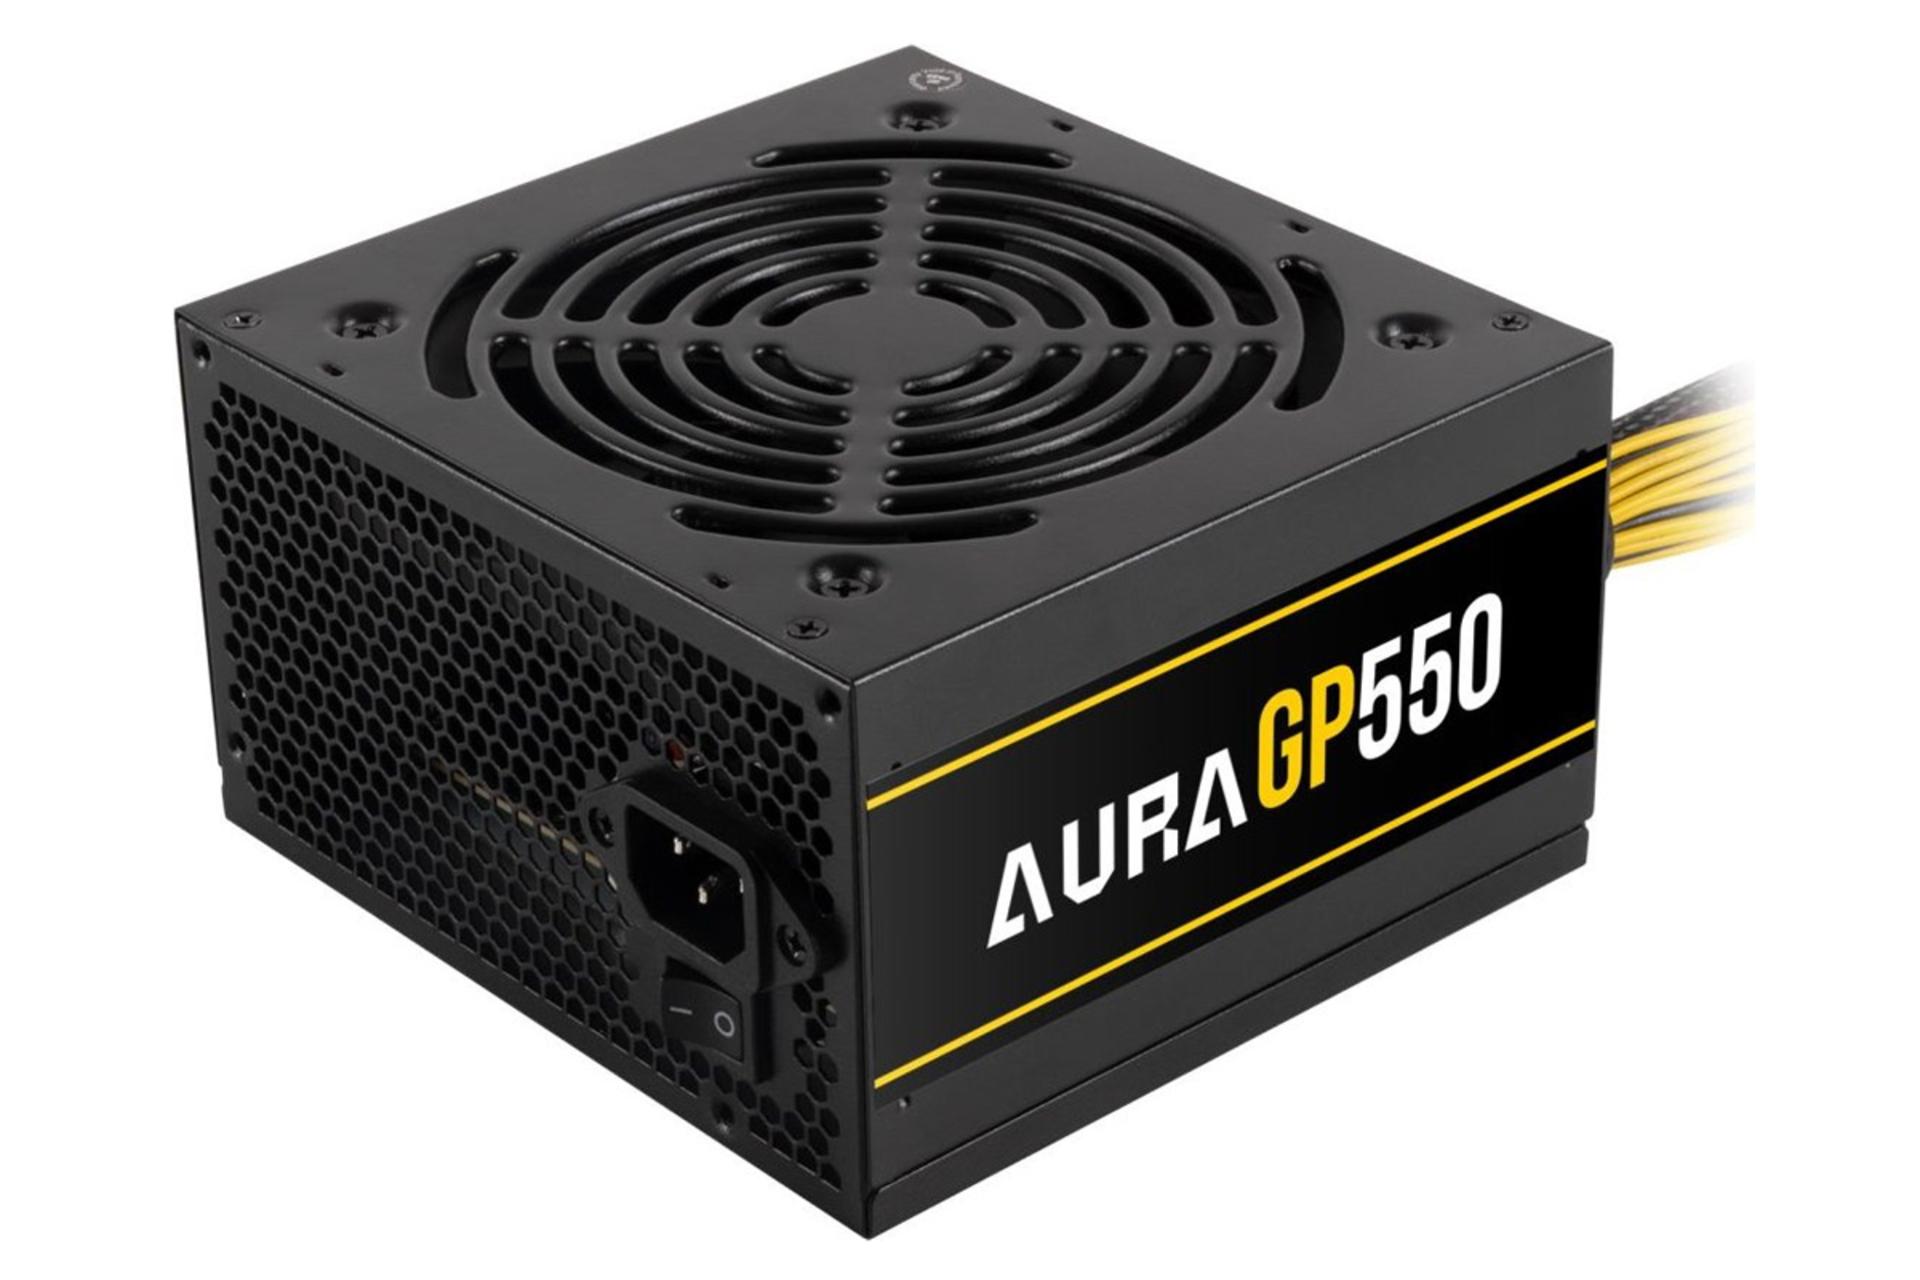 ابعاد و اندازه پاور کامپیوتر گیم دیاس AURA GP550 با توان 550 وات